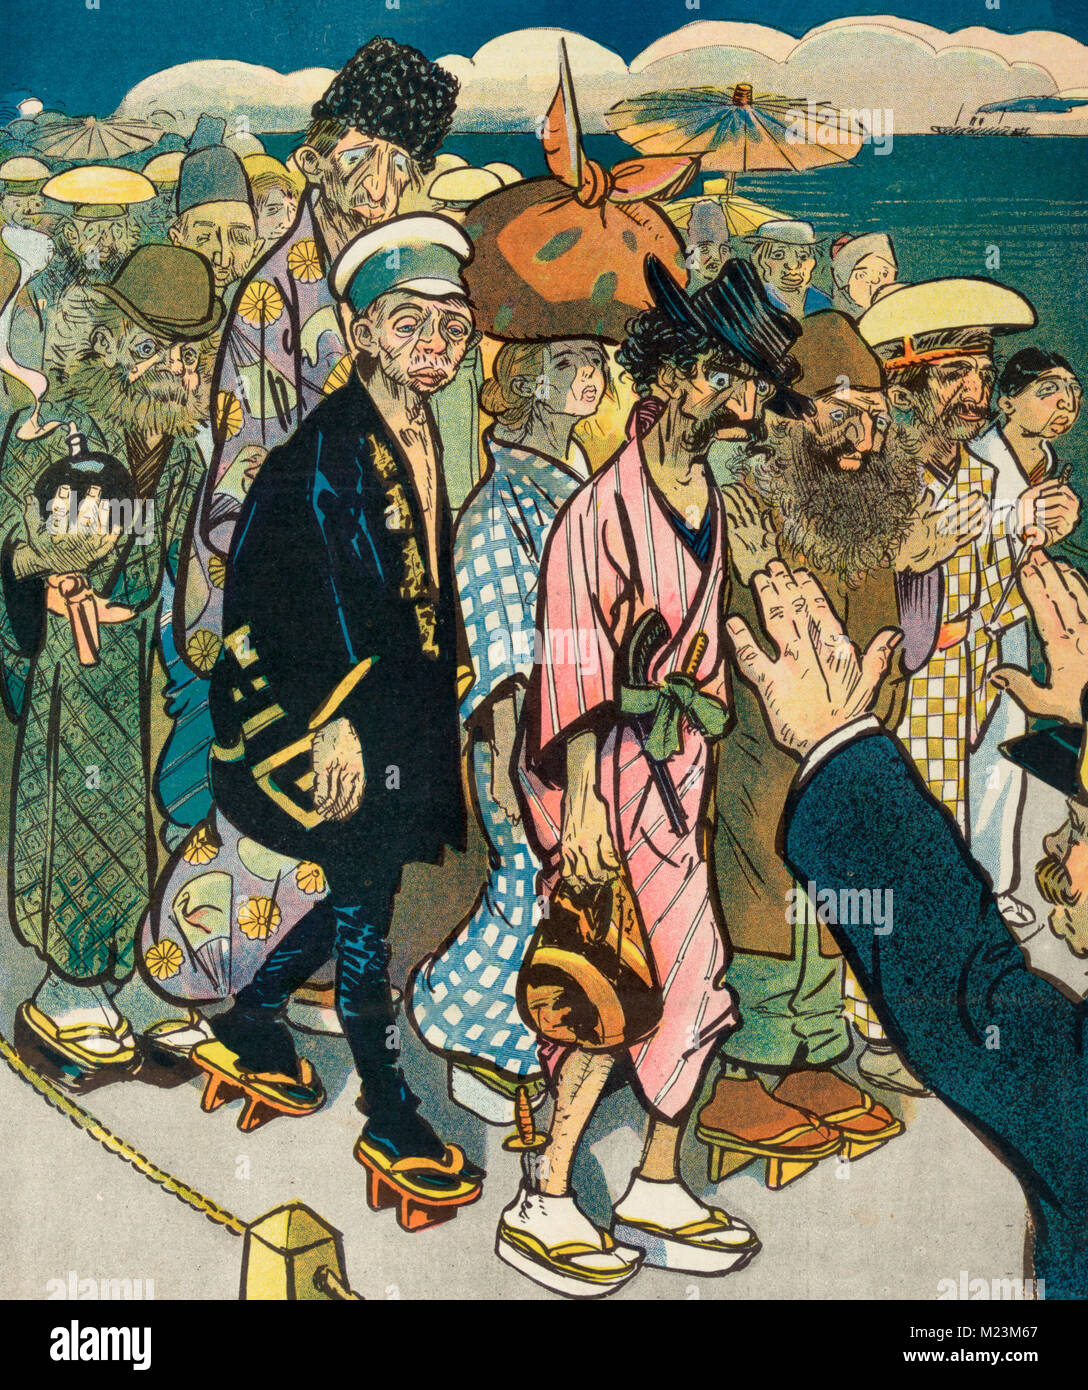 En cuanto a exclusión japonesa - ilustración muestra un grupo de andrajosos anarquistas y otros vestidos de kimonos, fingiendo ser inmigrantes japoneses; se detuvo en la frontera. Caricatura Política, 1907 Foto de stock